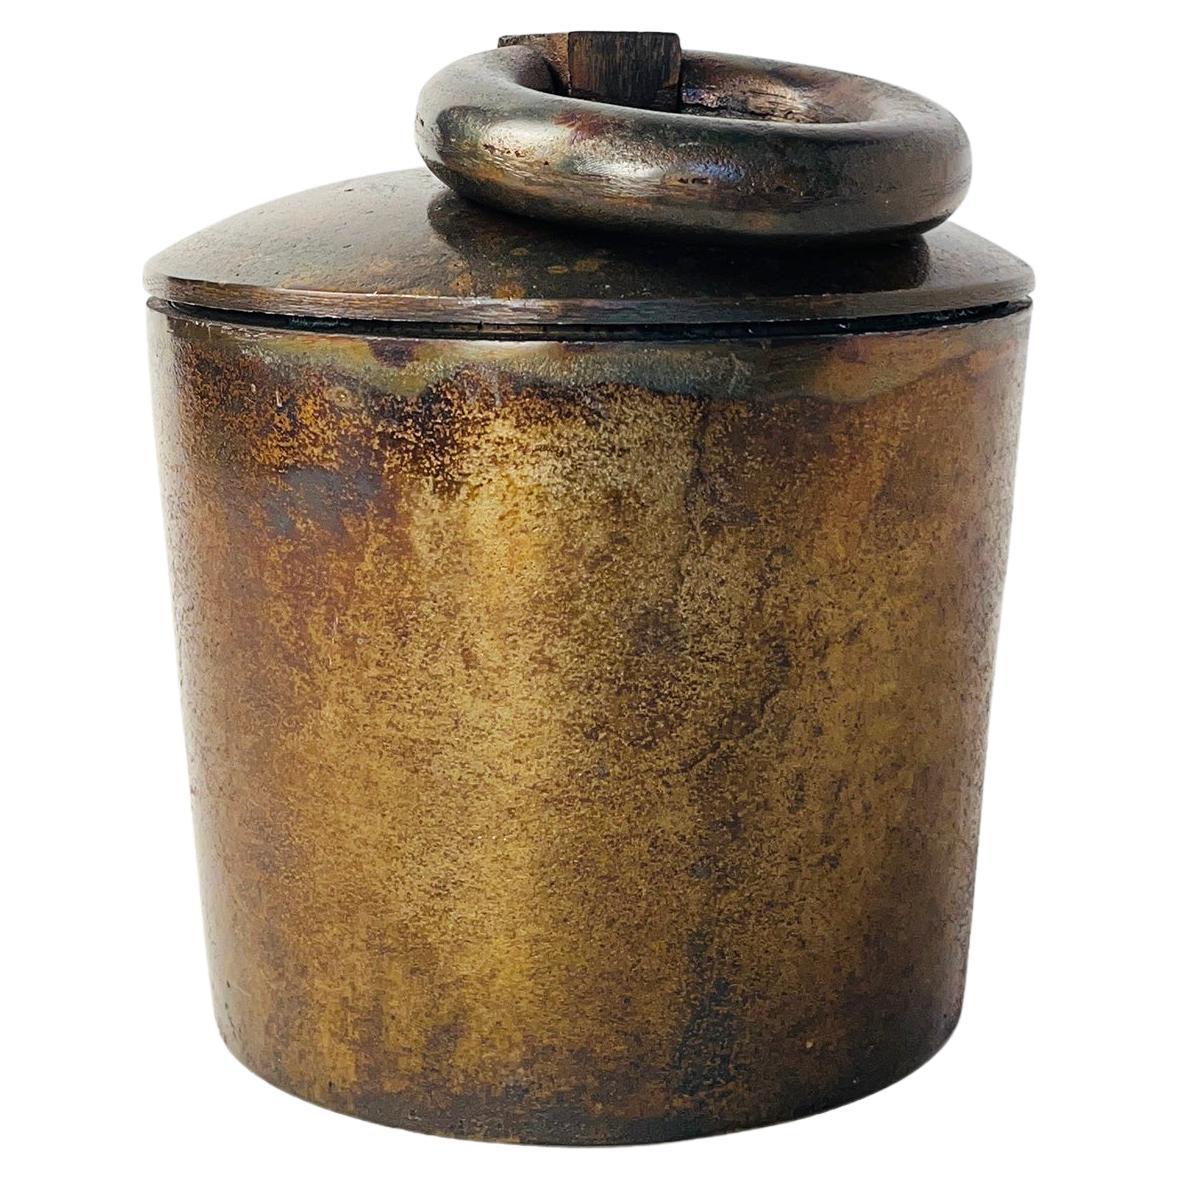 Urne aus Metall in antiker Bronze